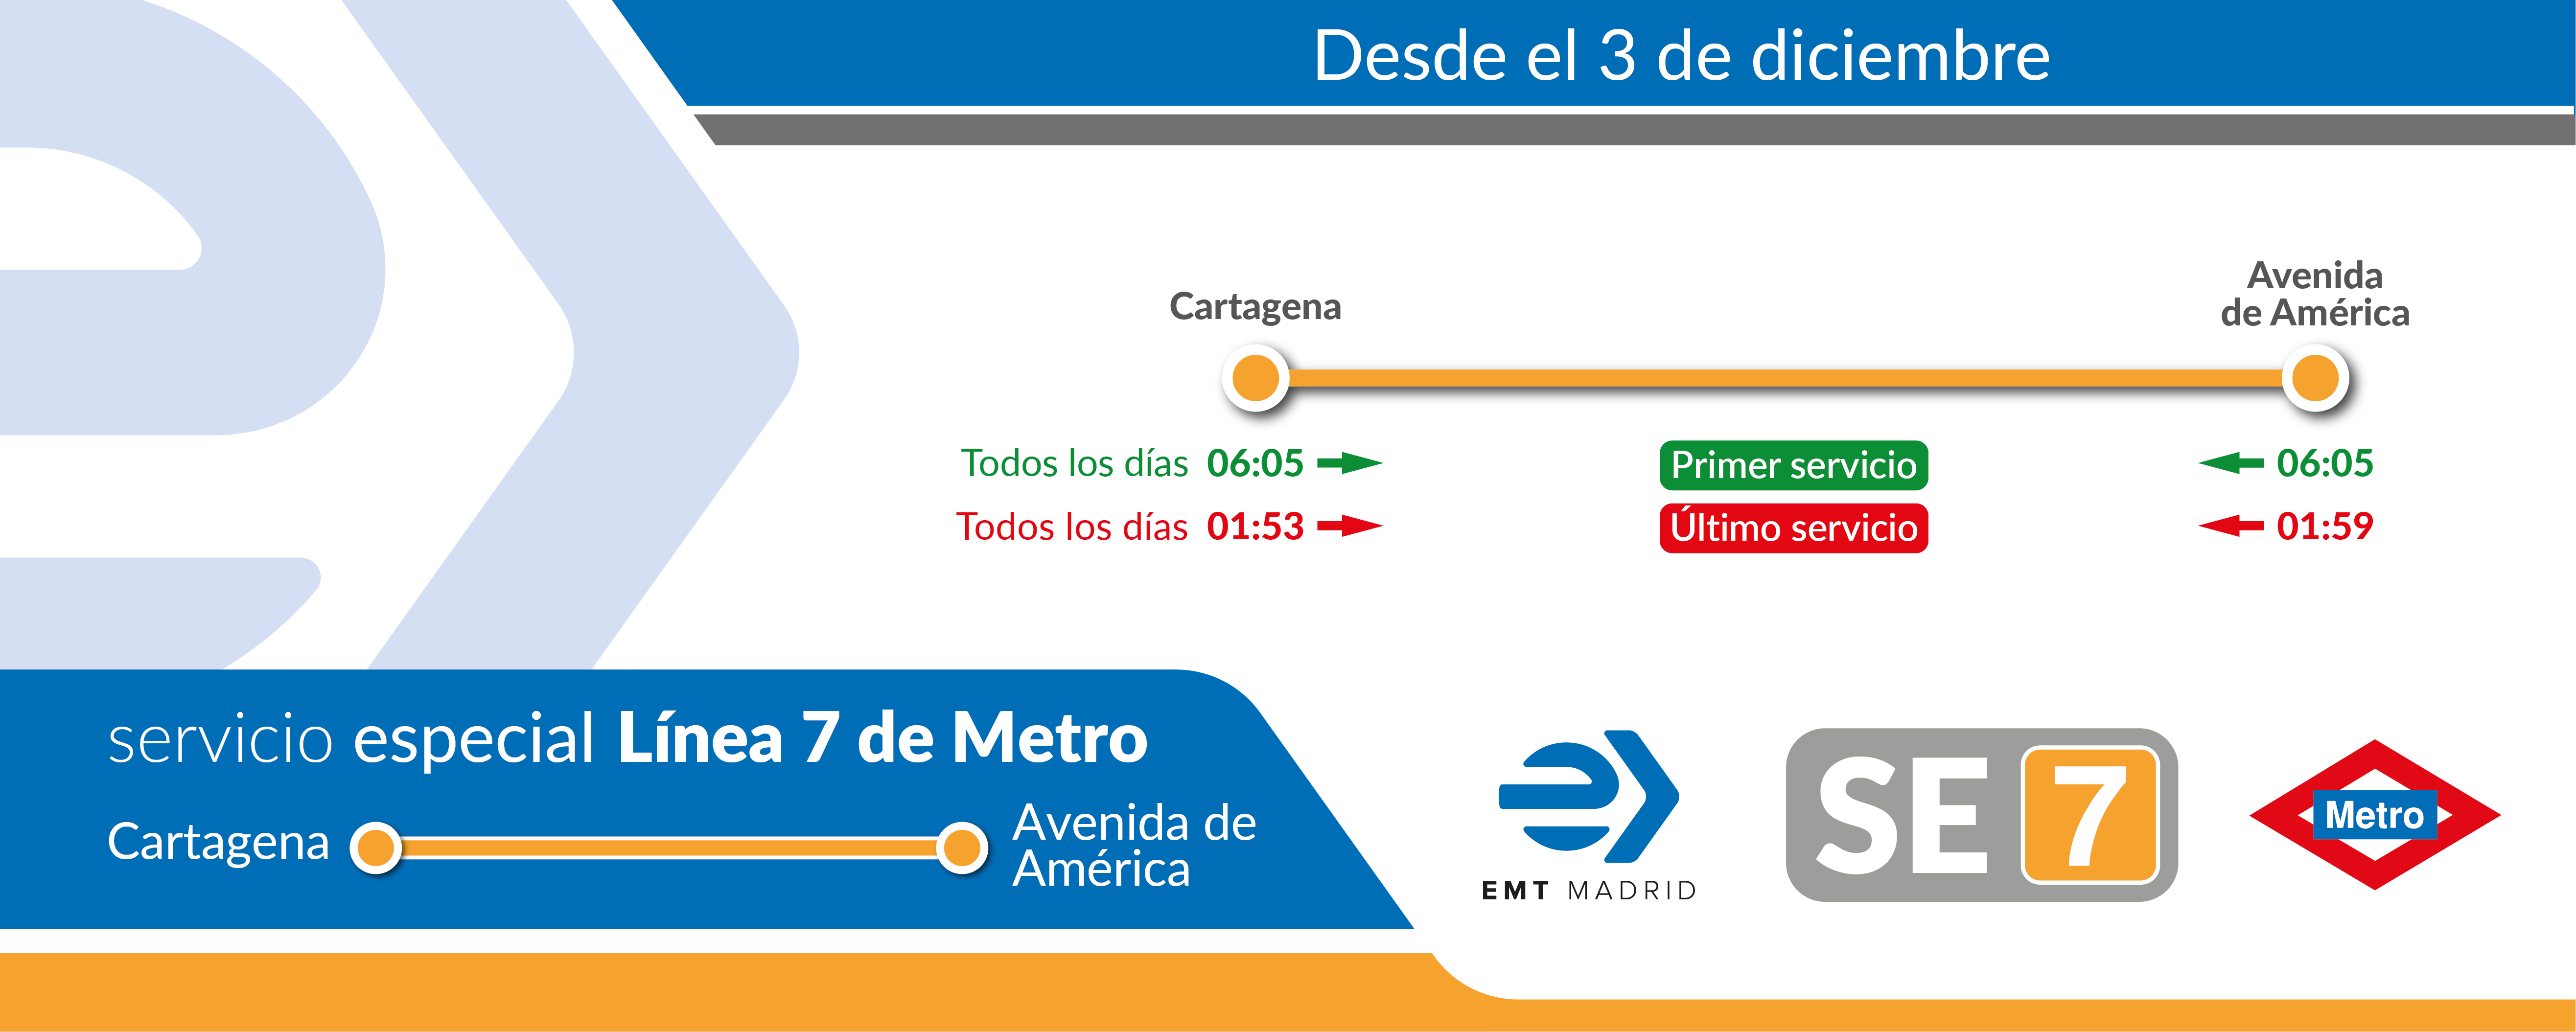 Un servicio especial de EMT conectará las estaciones de Cartagena y Avenida de América